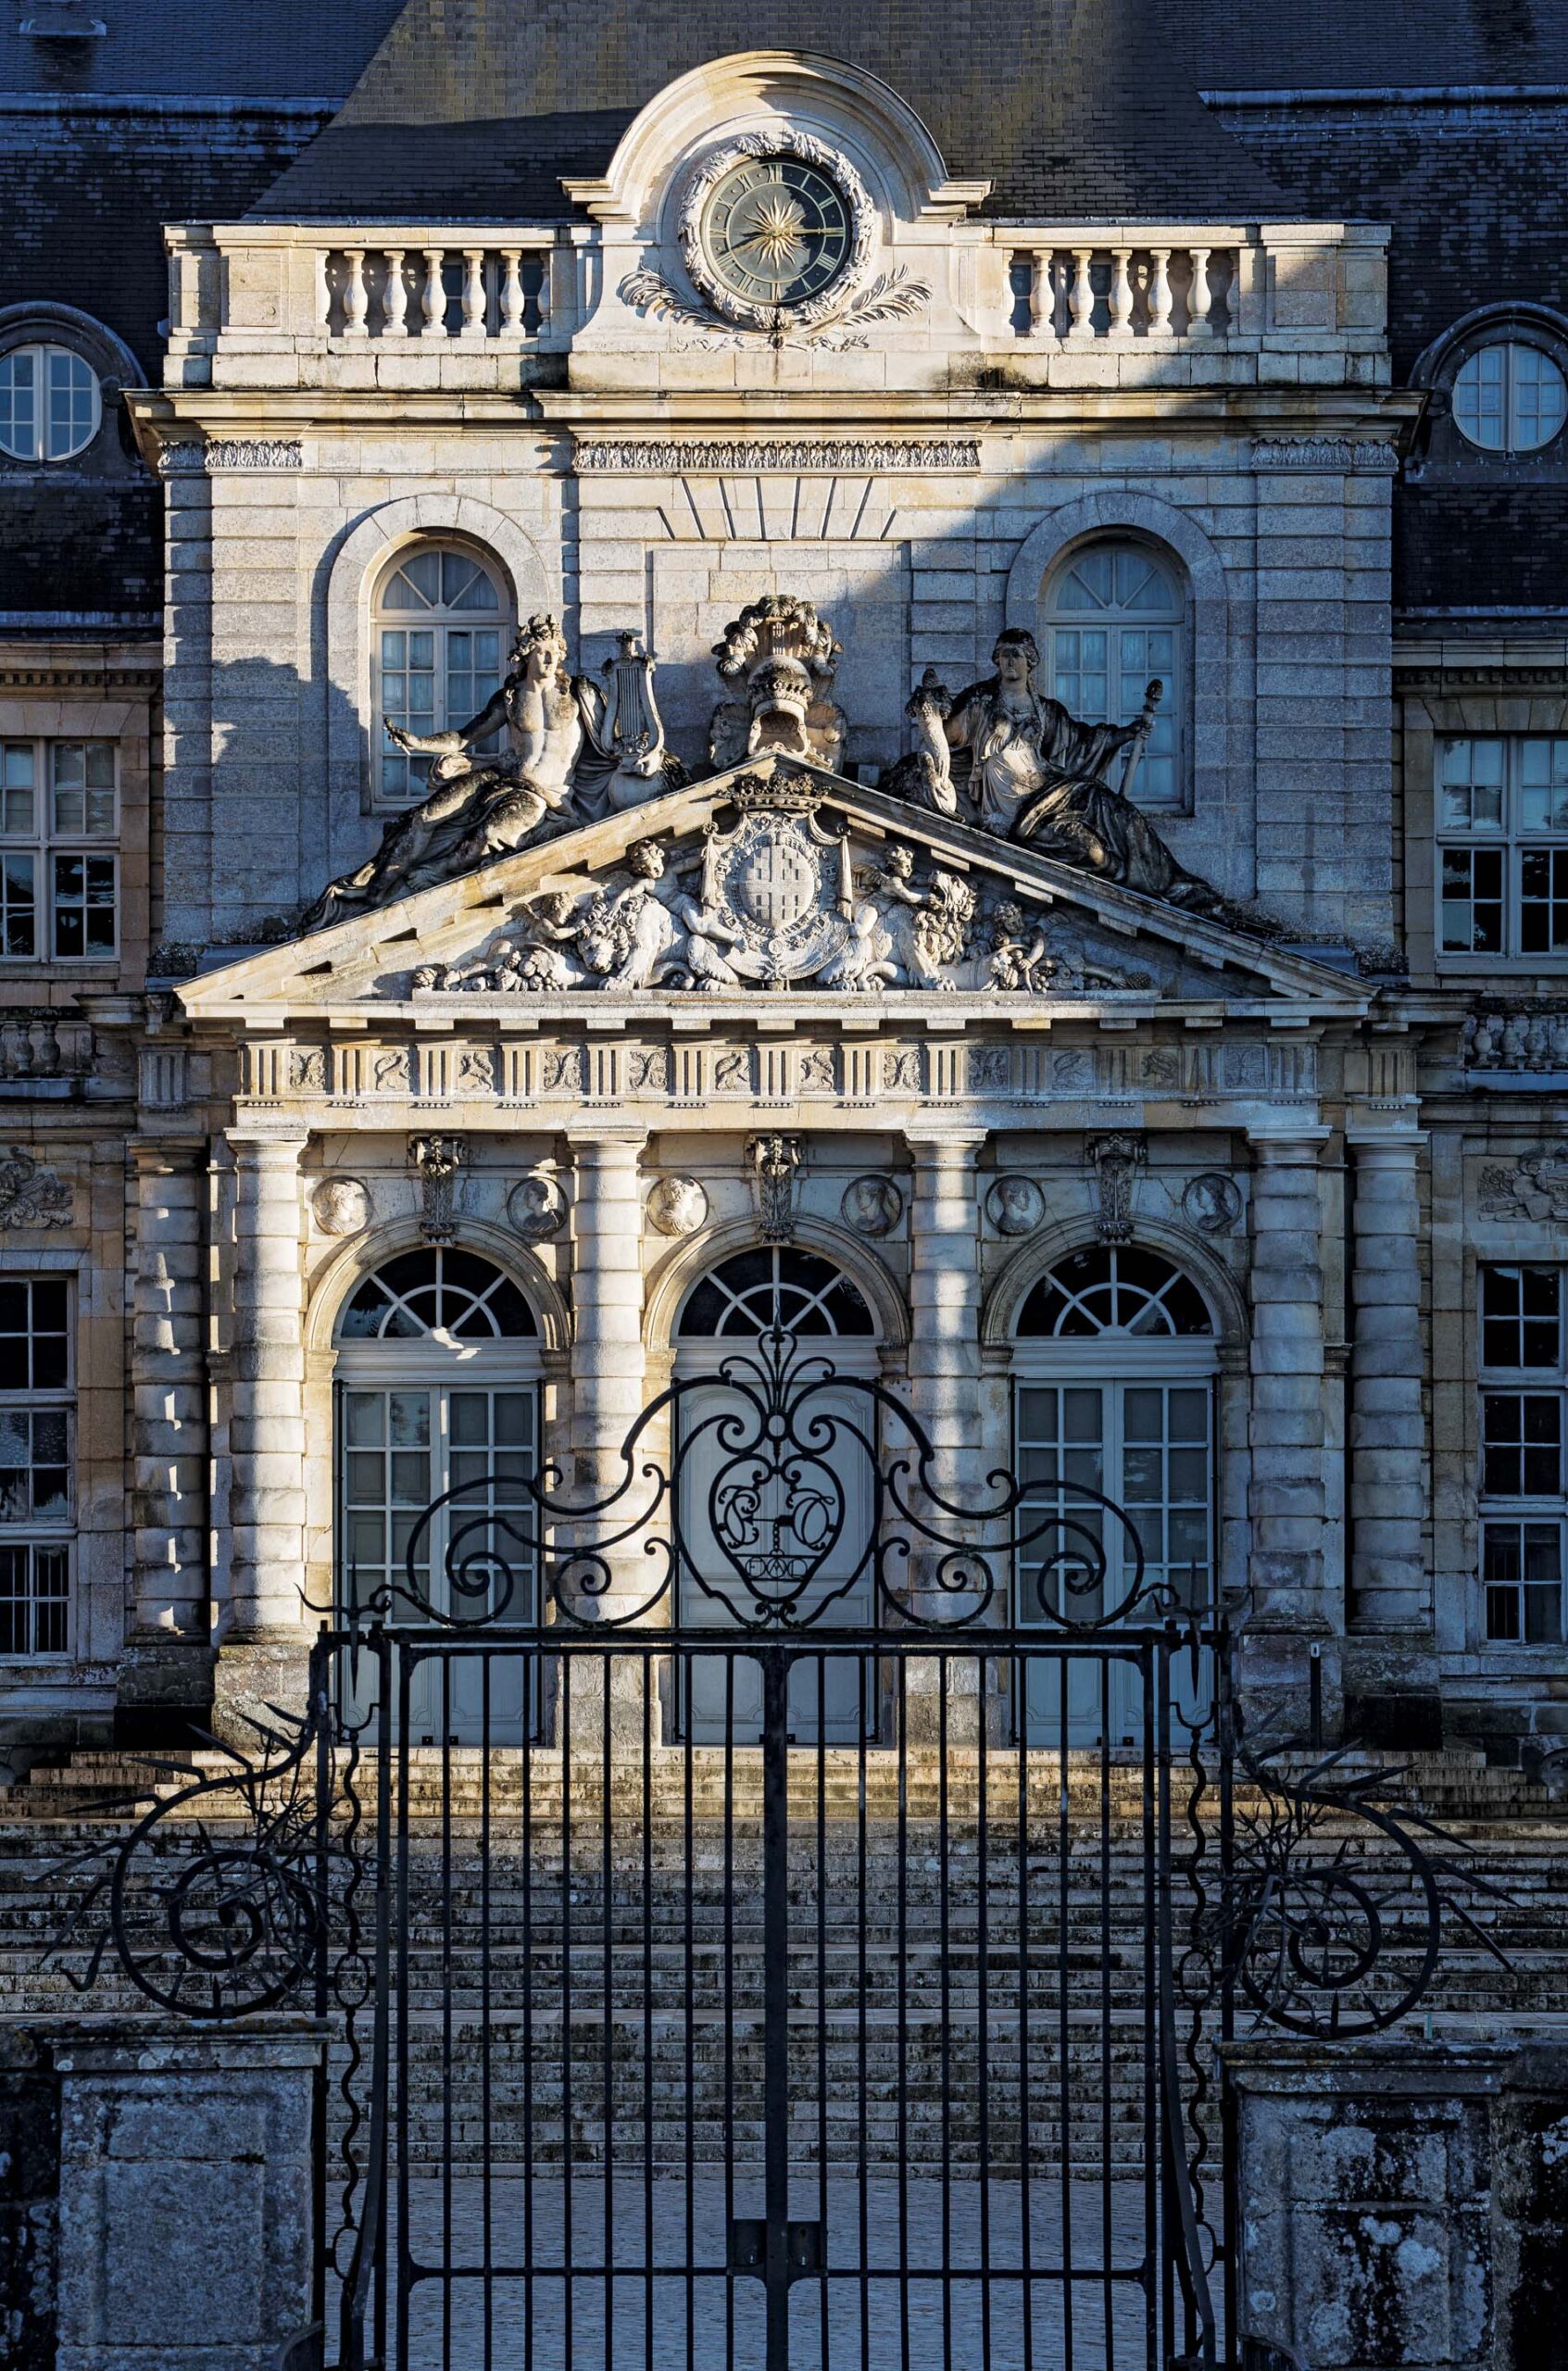 Vaux-le-Vicomte castle, a 150-year heritage